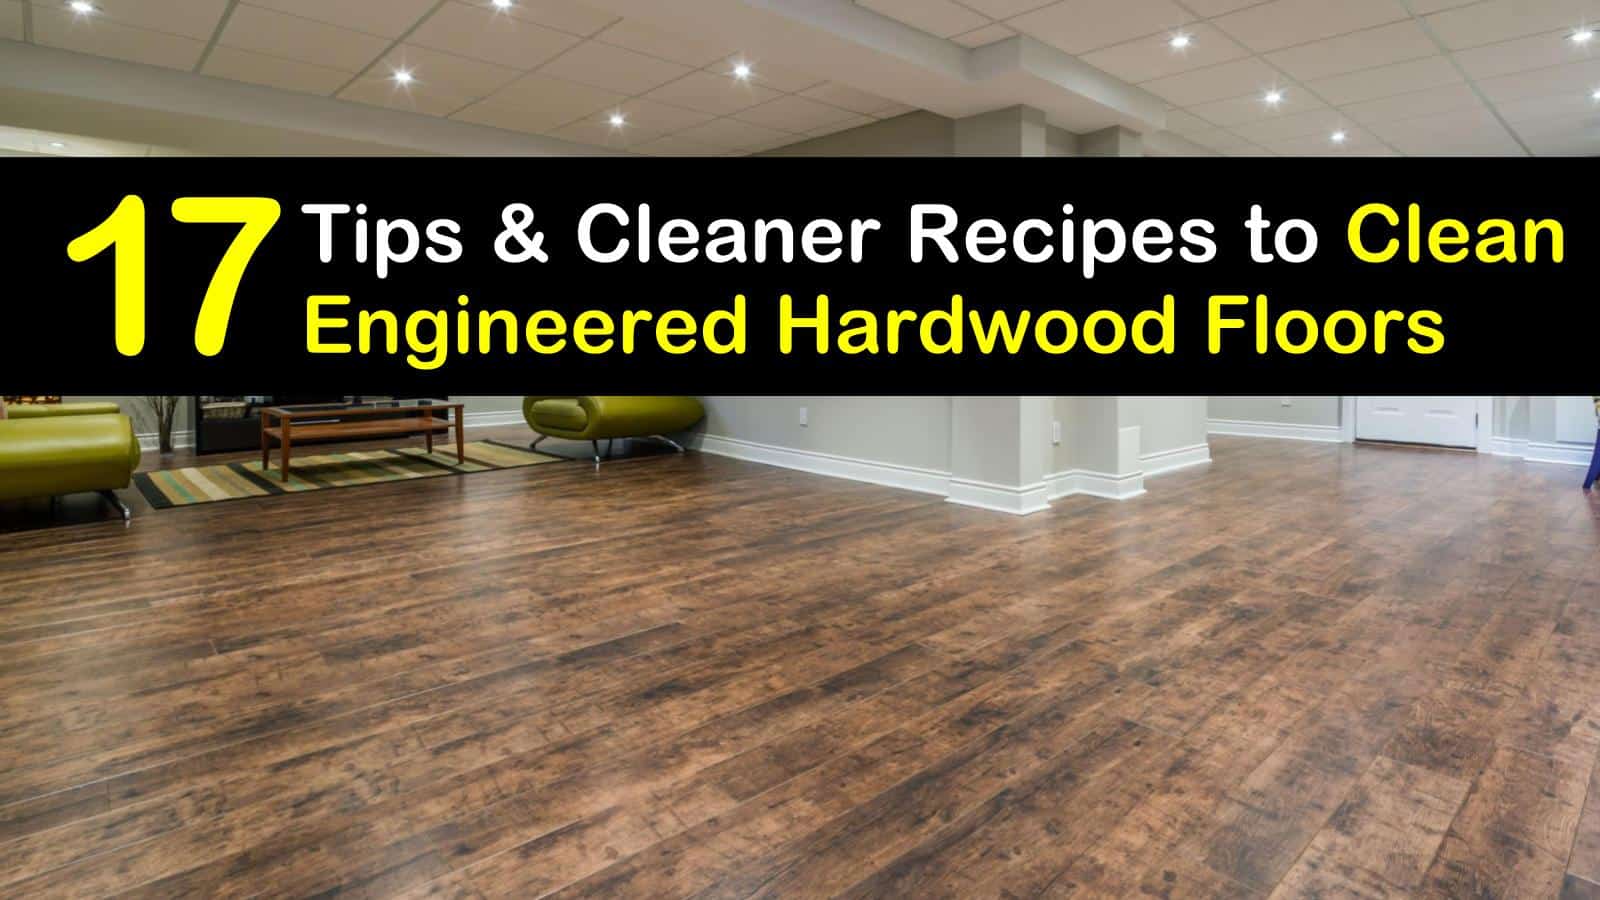 Clean Engineered Hardwood Floors, Does Vinegar Clean Hardwood Floors